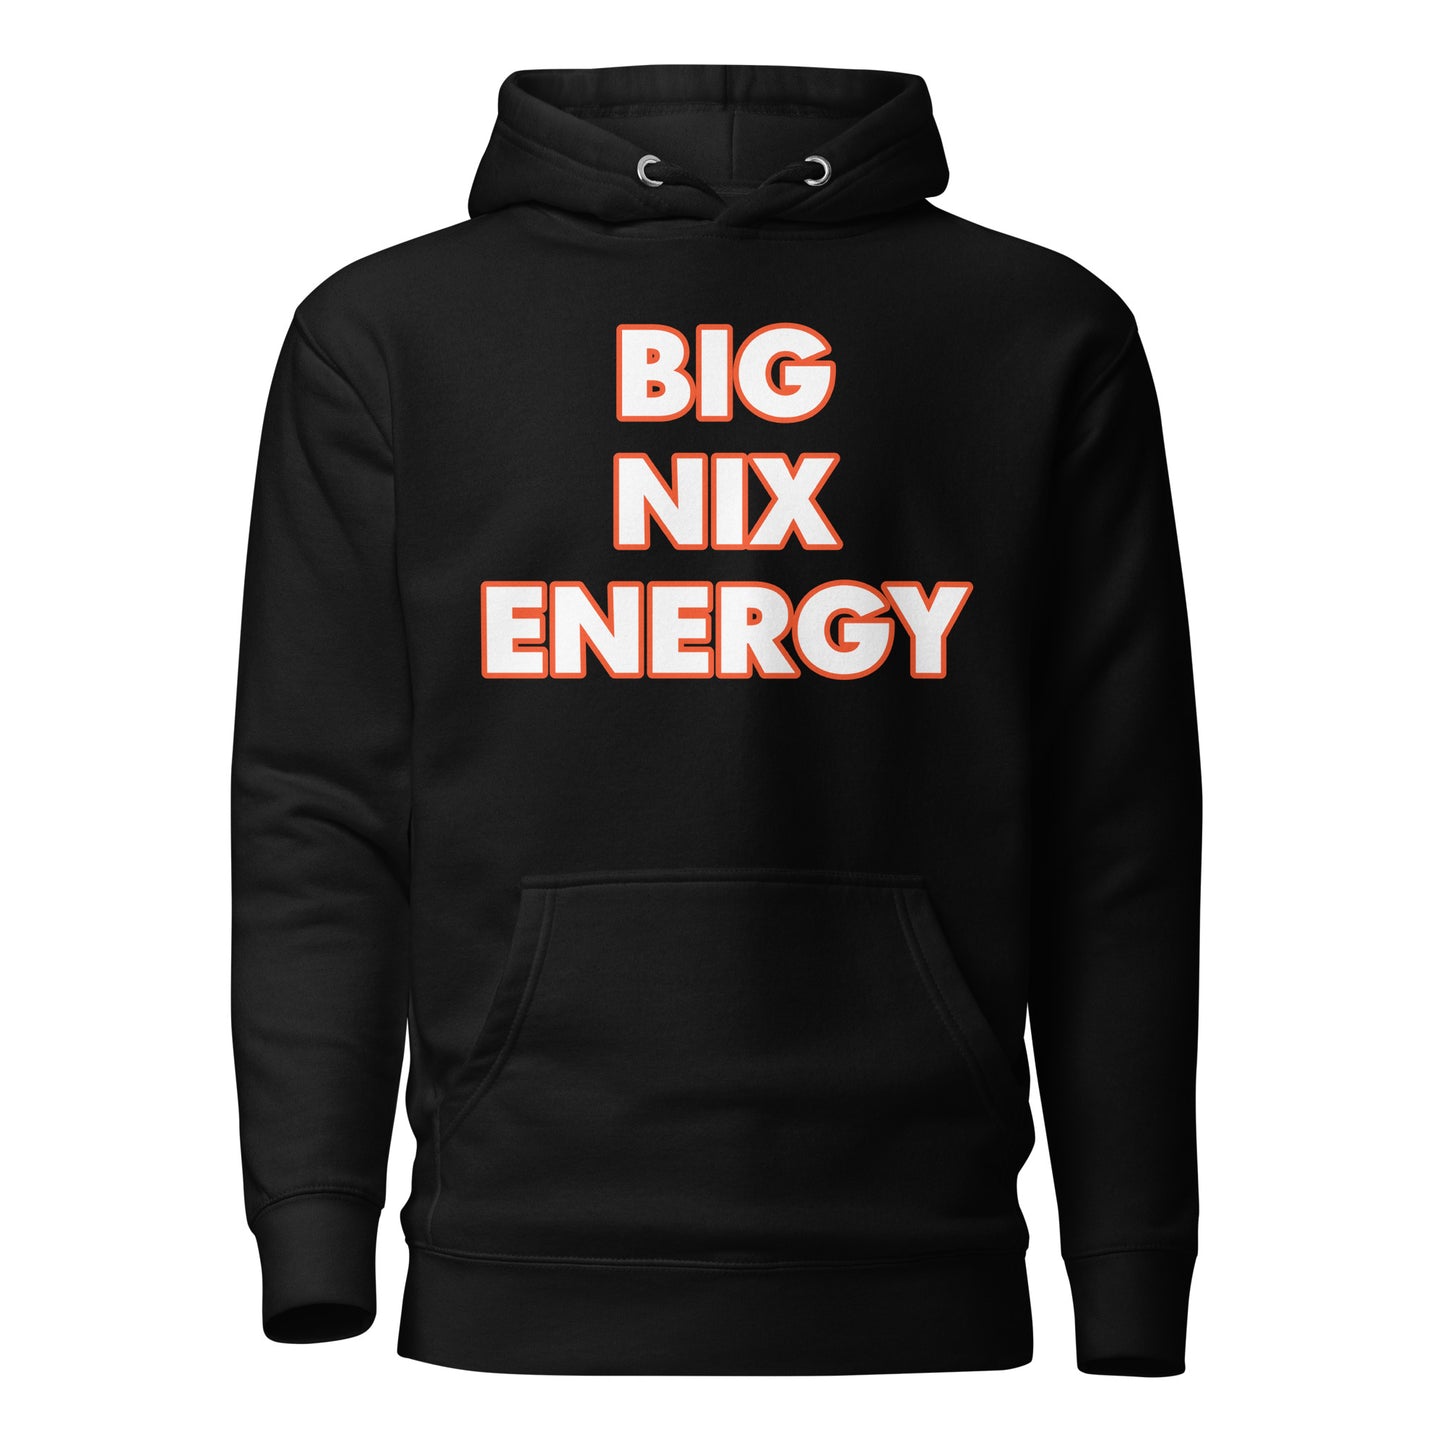 "BIG NIX ENERGY" Unisex Hoodie